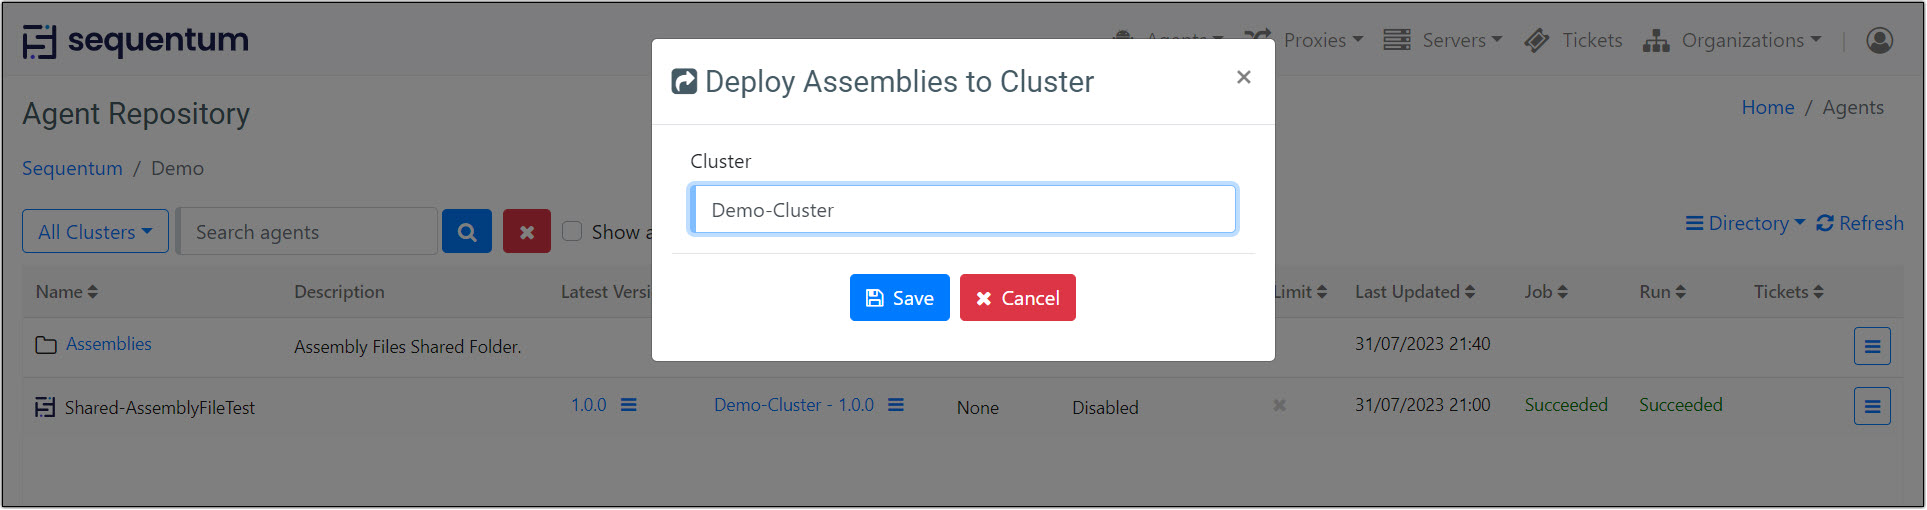 Deploy-To-Cluster-WebPortal.jpg